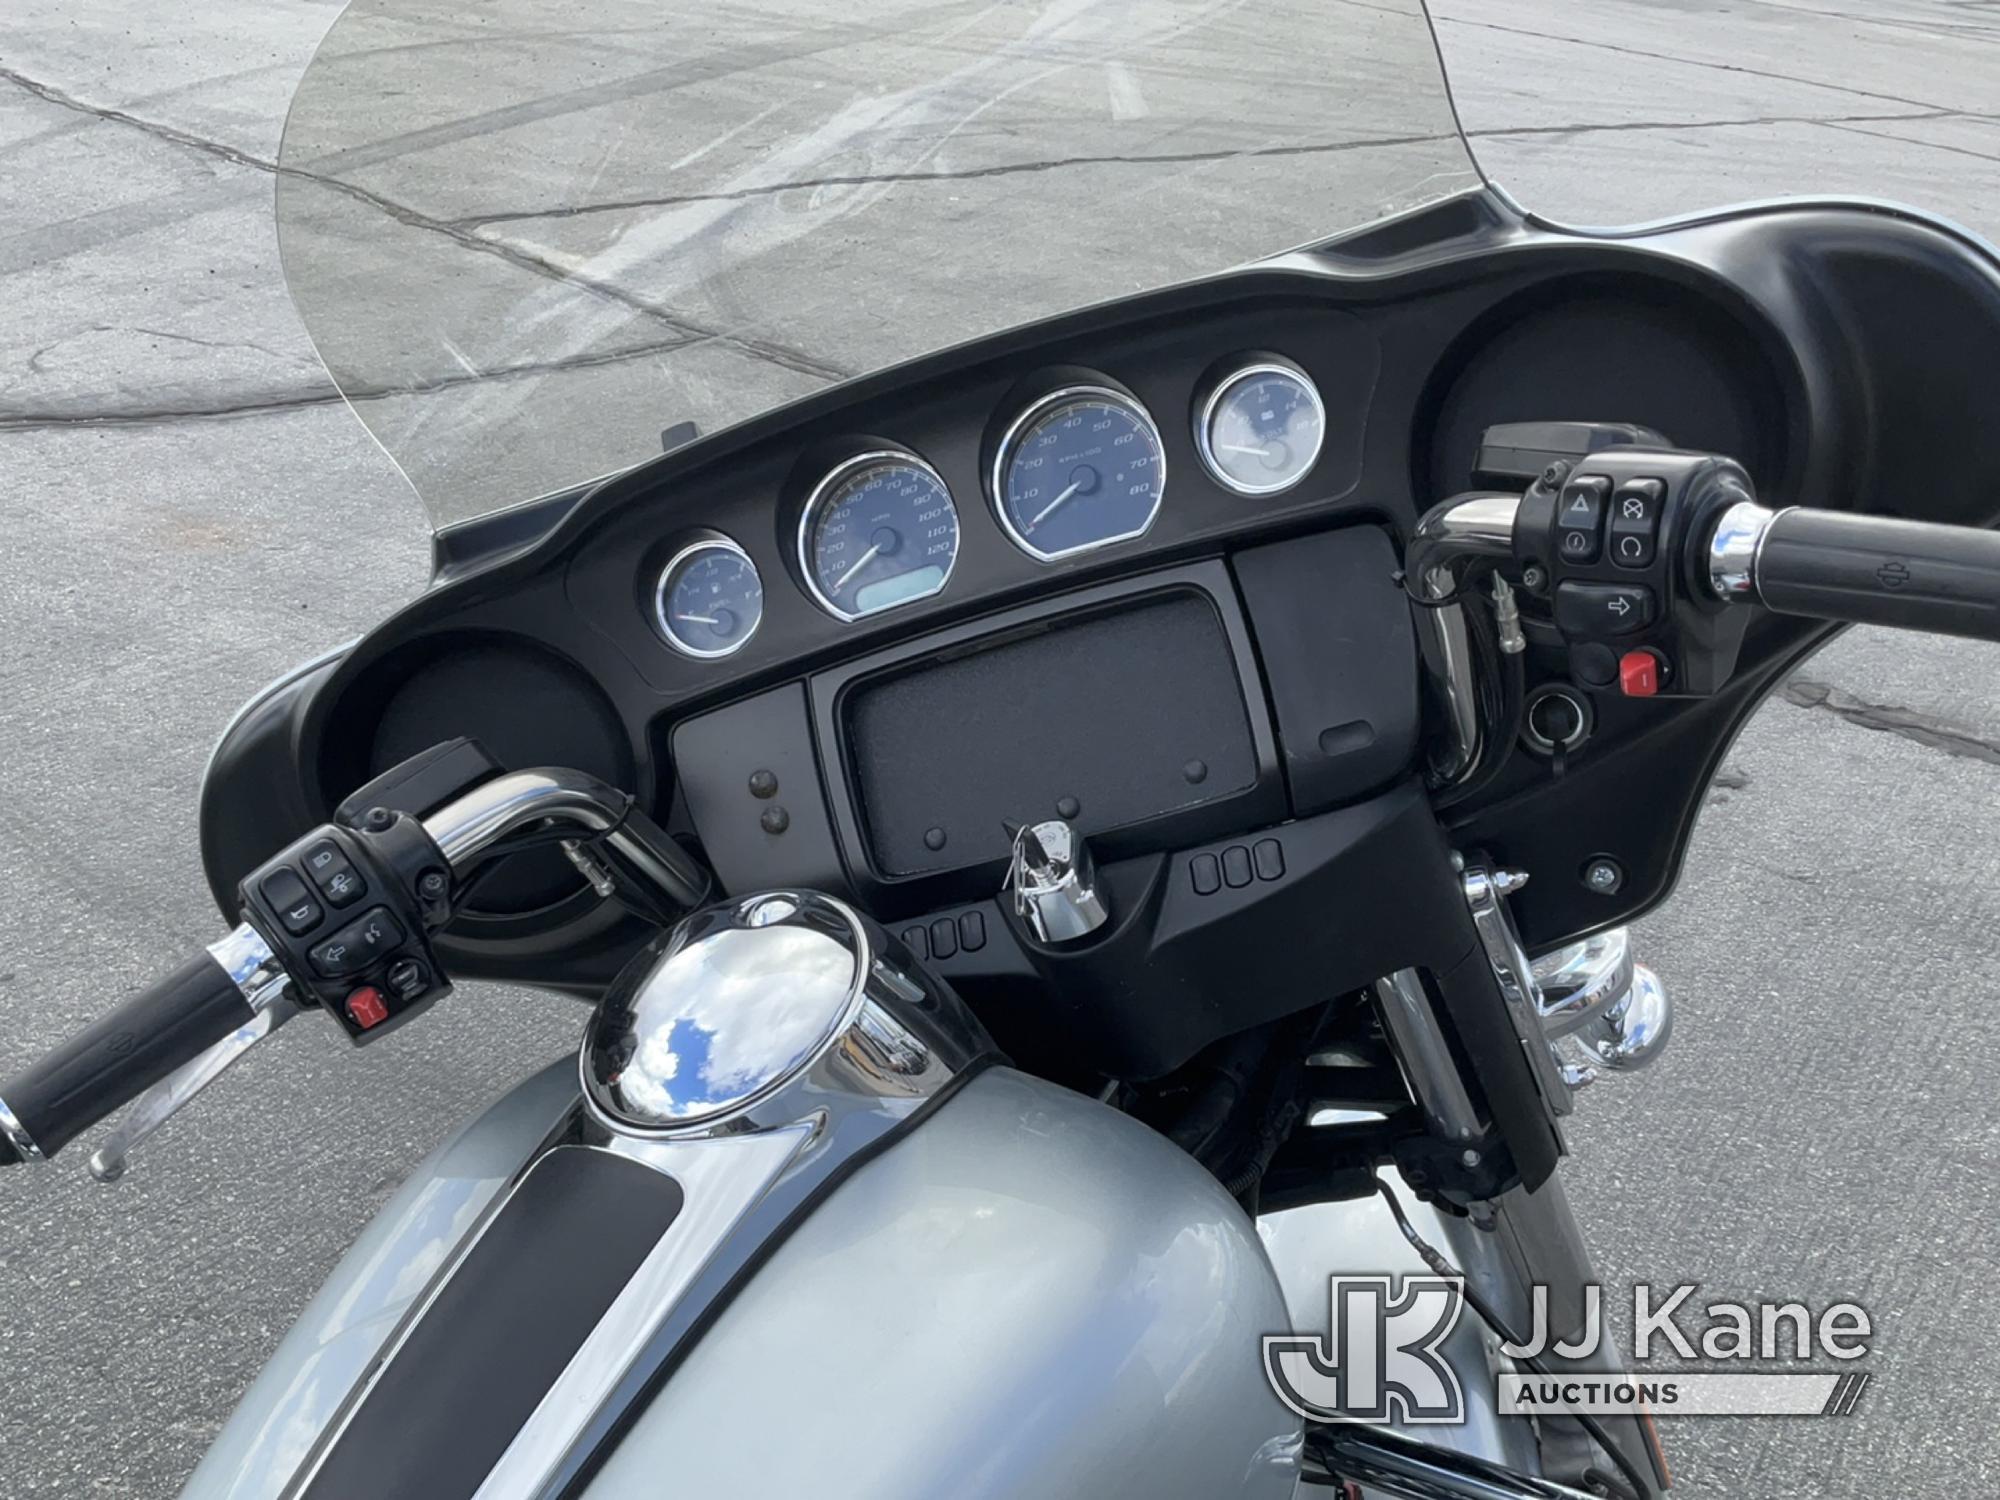 (Salt Lake City, UT) 2015 Harley-Davidson FLHTP Police Motorcycle Runs & Moves) (ABS Light On